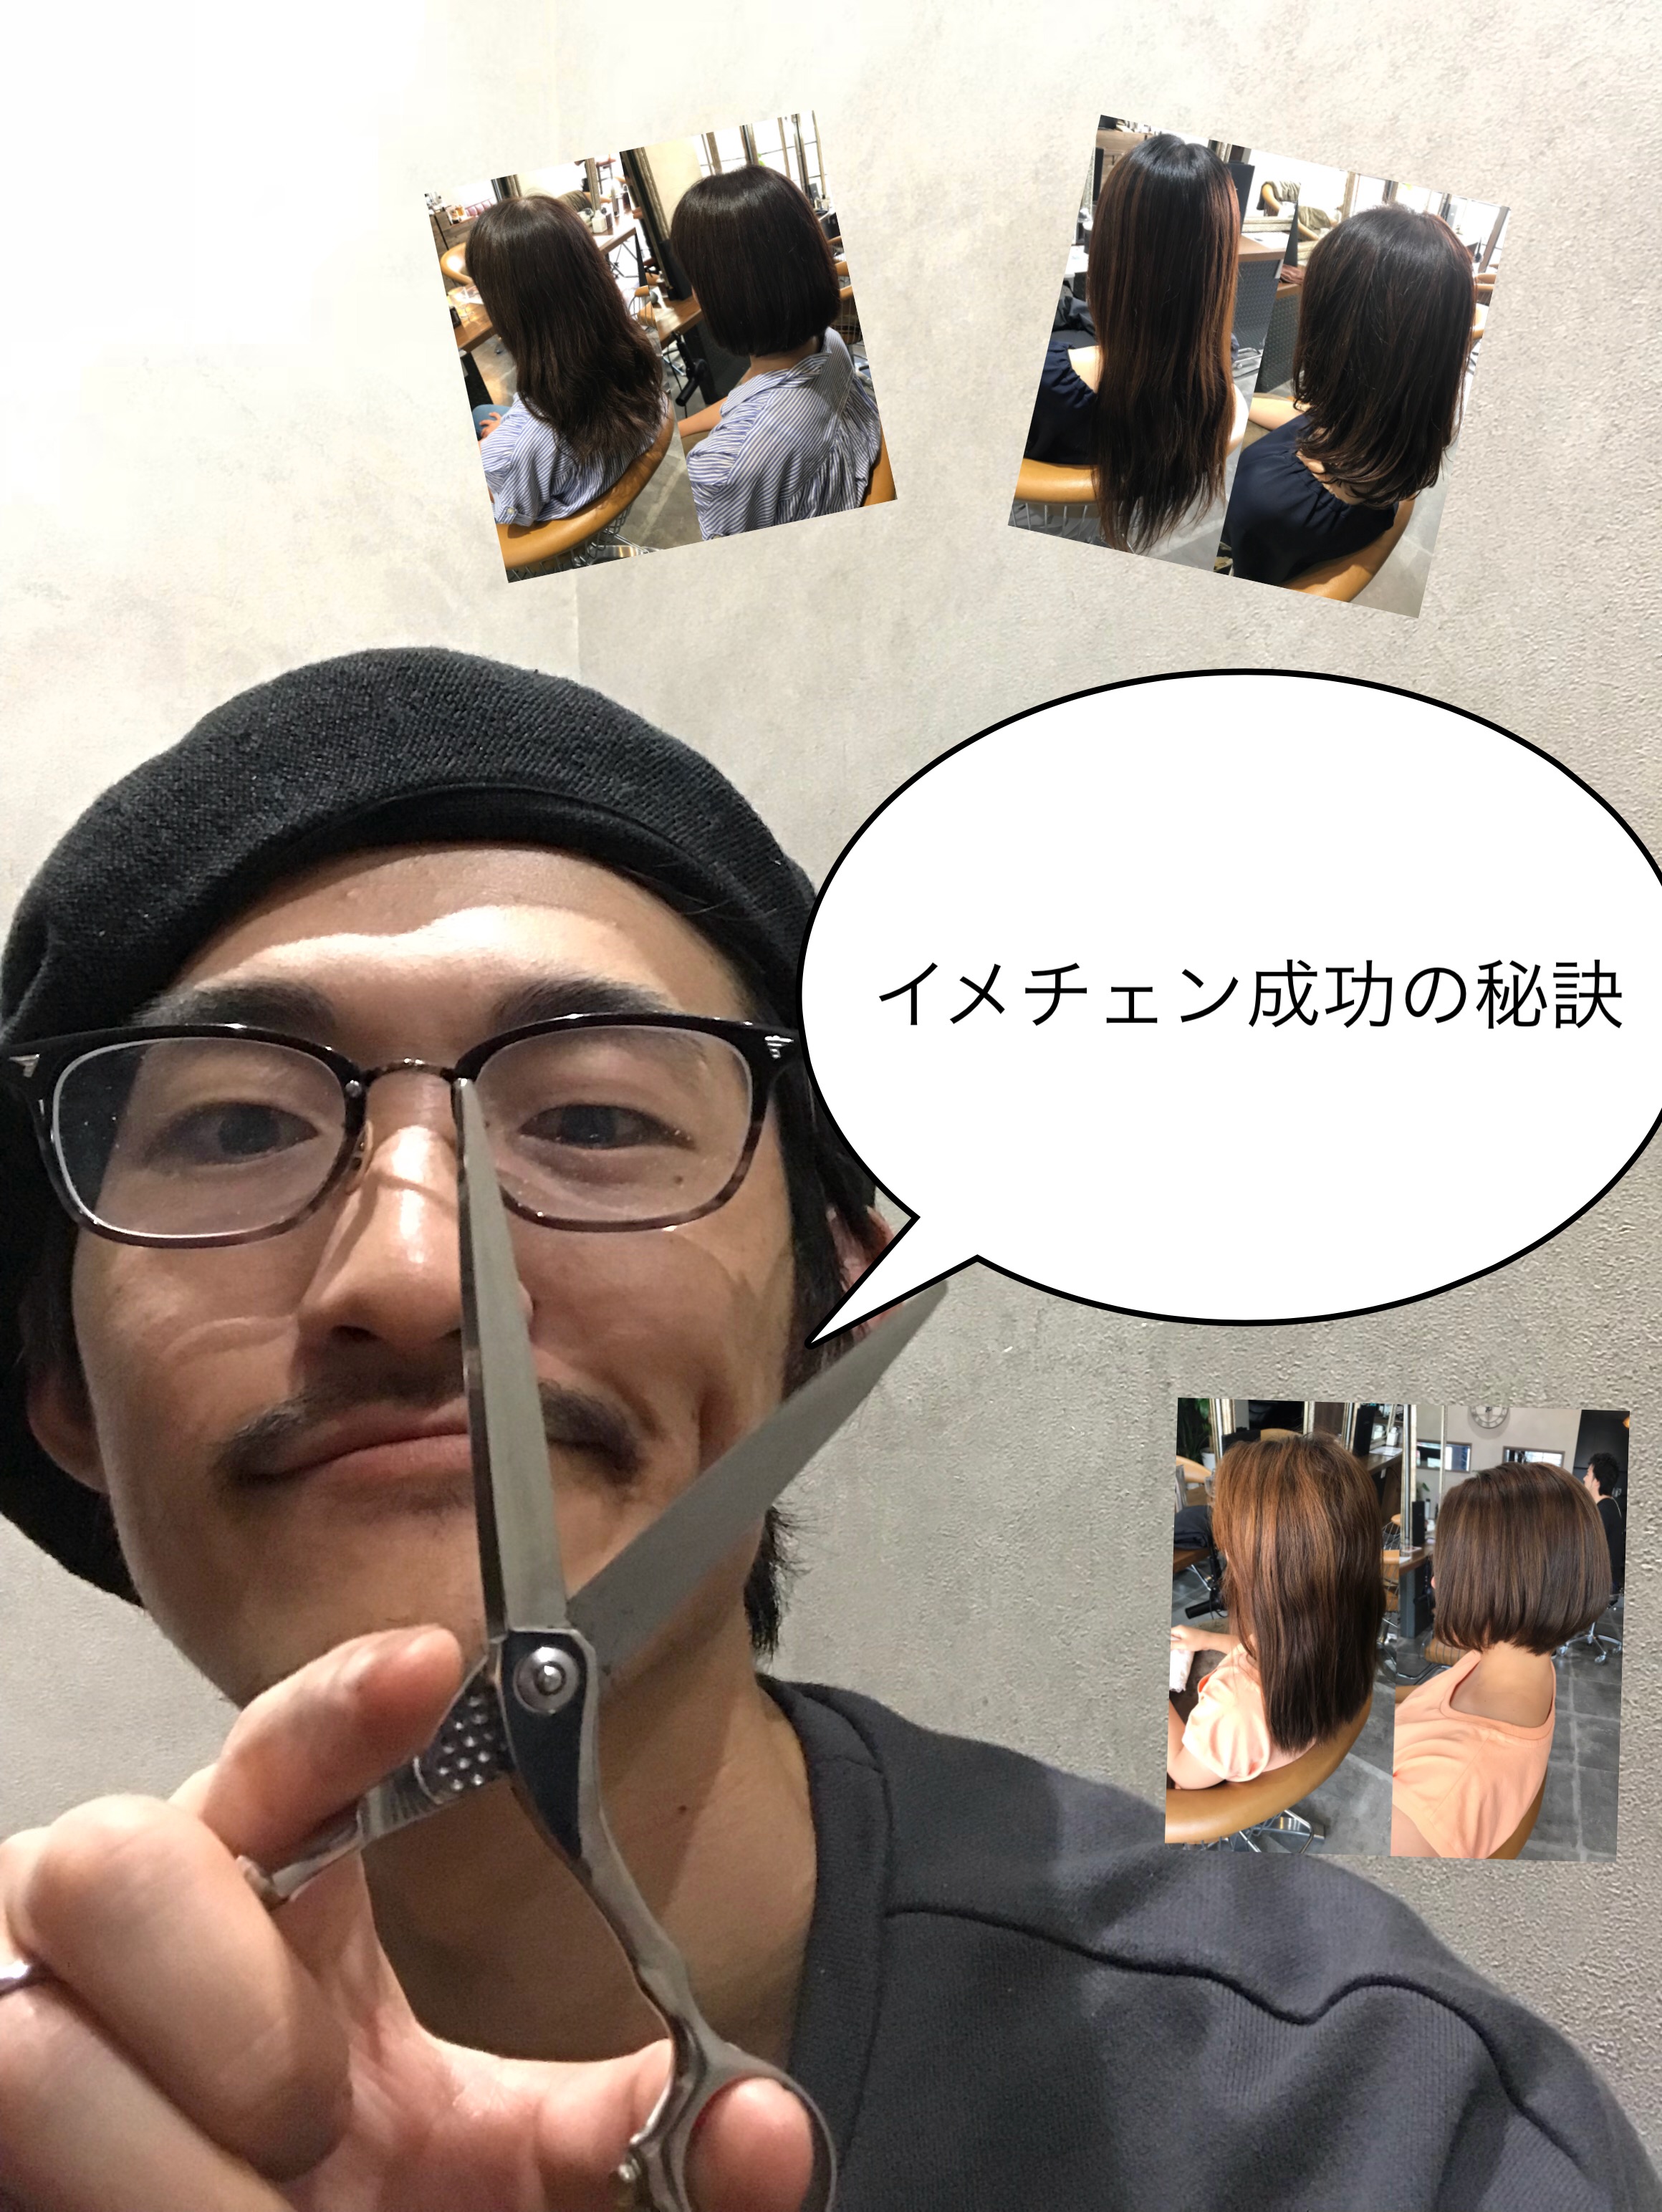 バッサリイメチェンカット 失敗 後悔しない髪型へ 成功するには その方法とは 横浜 鶴ヶ峰 美容室 ボブ ショートが得意な美容師 Naoki語録